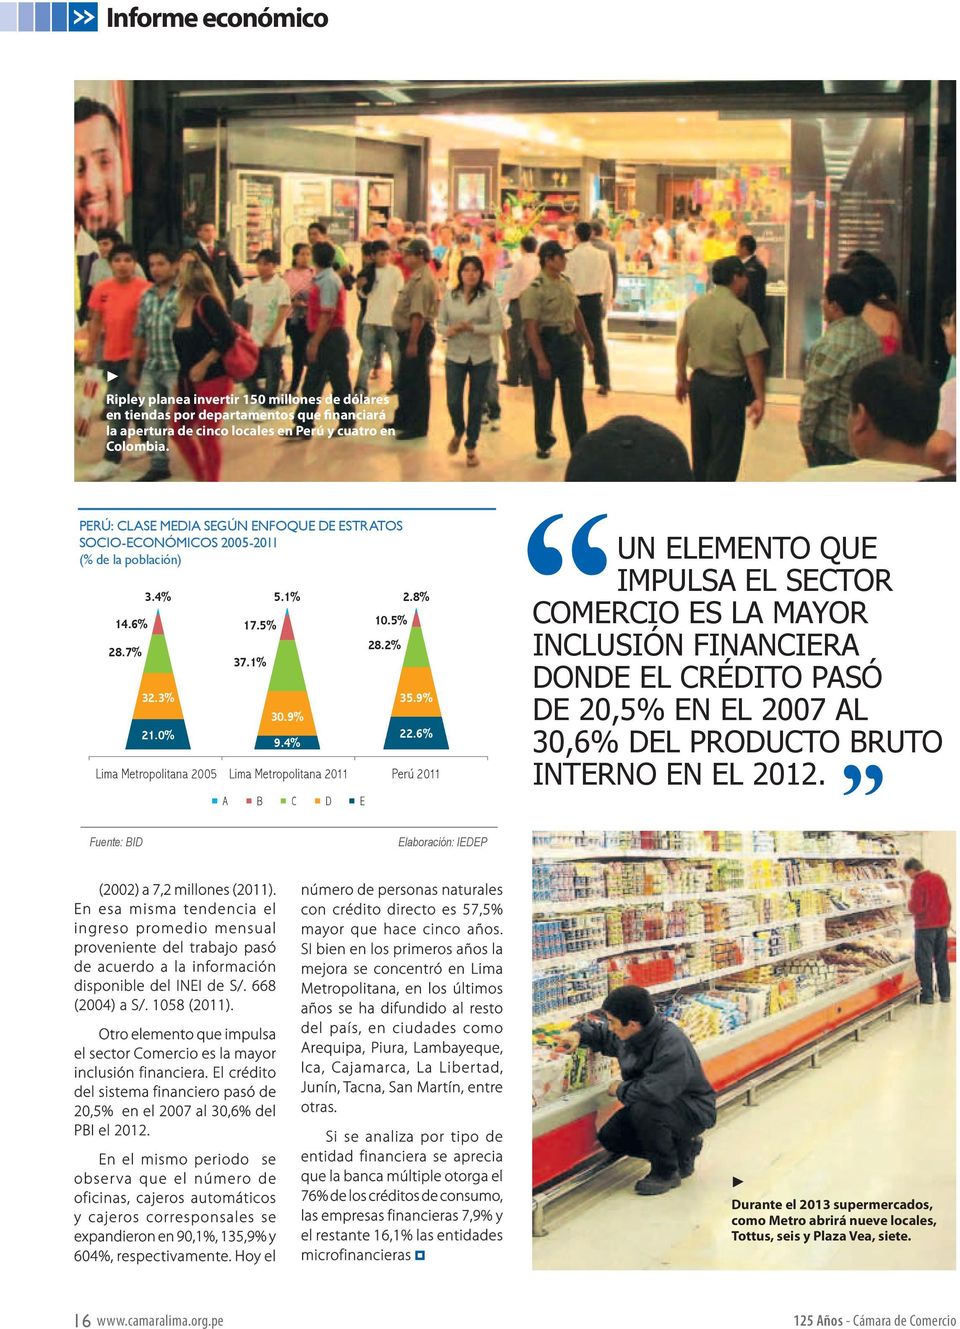 Perú y cuatro en Colombia. PERÚ: CLASE MEDIA SEGÚN ENFOQUE DE ESTRATOS SOCIO-ECONÓMICOS 2005-2011 (% de la población) 14.6% 28.7% 3.4% 32.3% 21.0% 17.5% 37.1% 5.1% 30.9% 9.4% 10.5% 28.2% 2.8% 35.